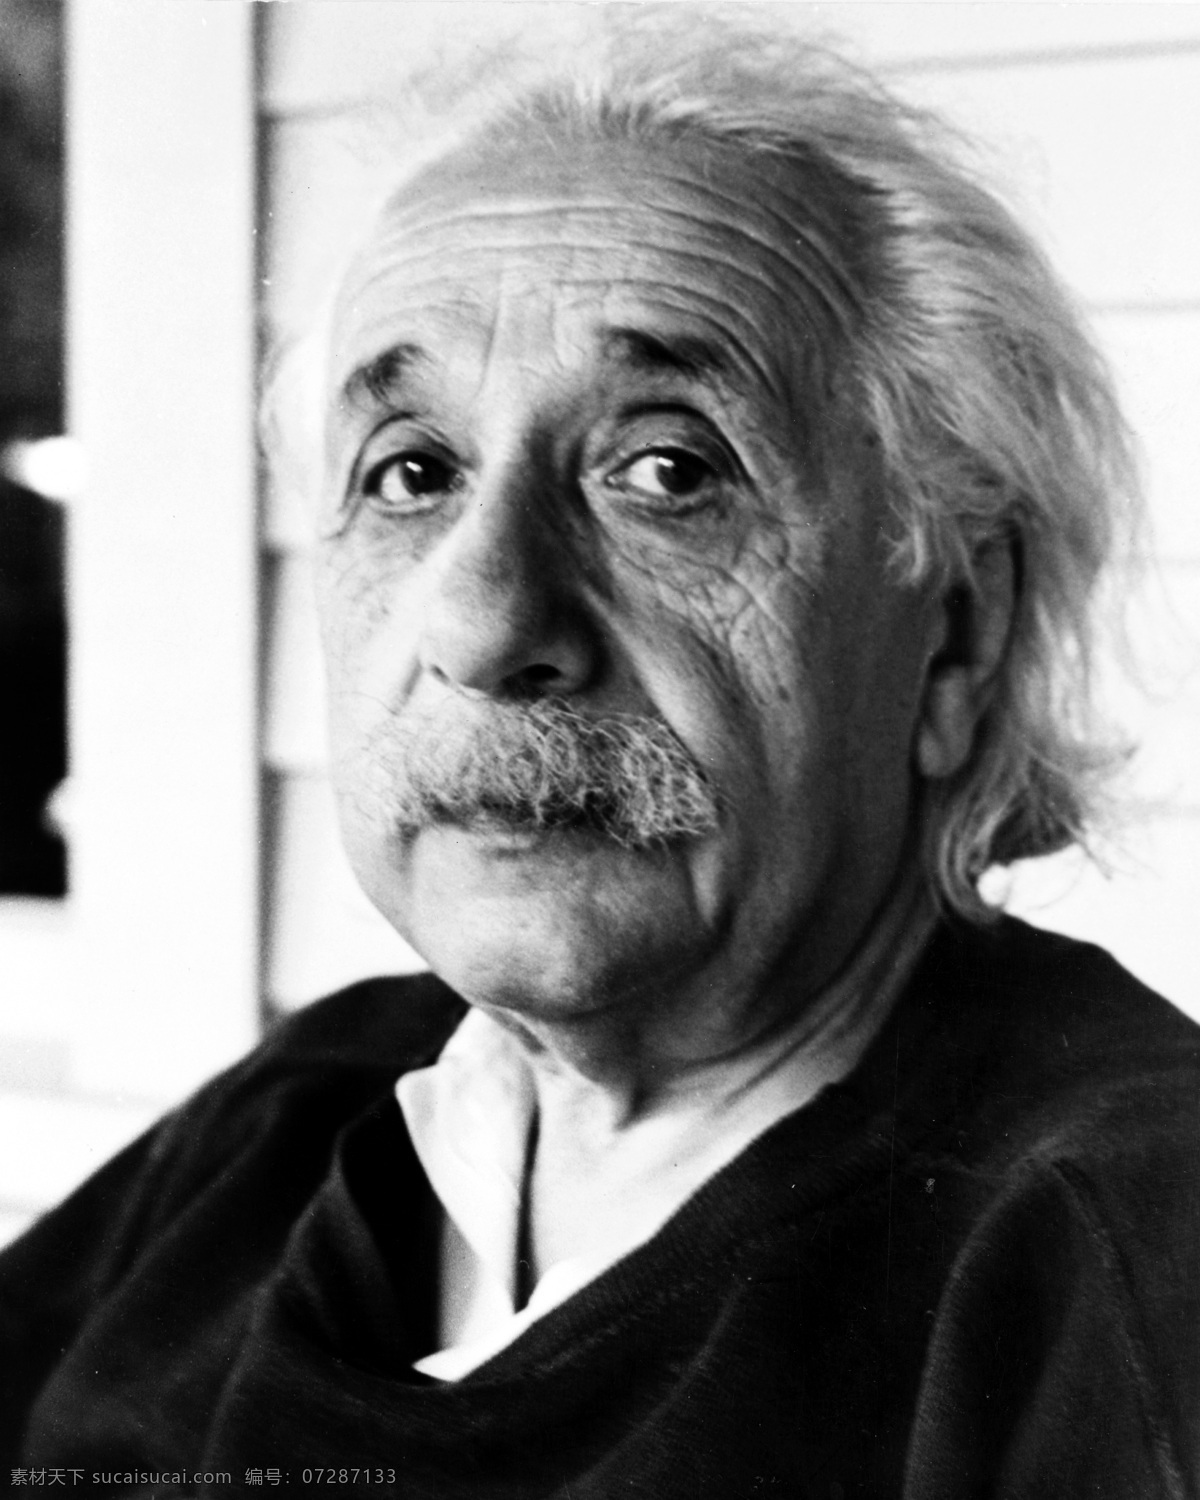 爱因斯坦 阿尔伯特 科学家 伟人 物理学家 老照片 人物图库 明星偶像 摄影图库